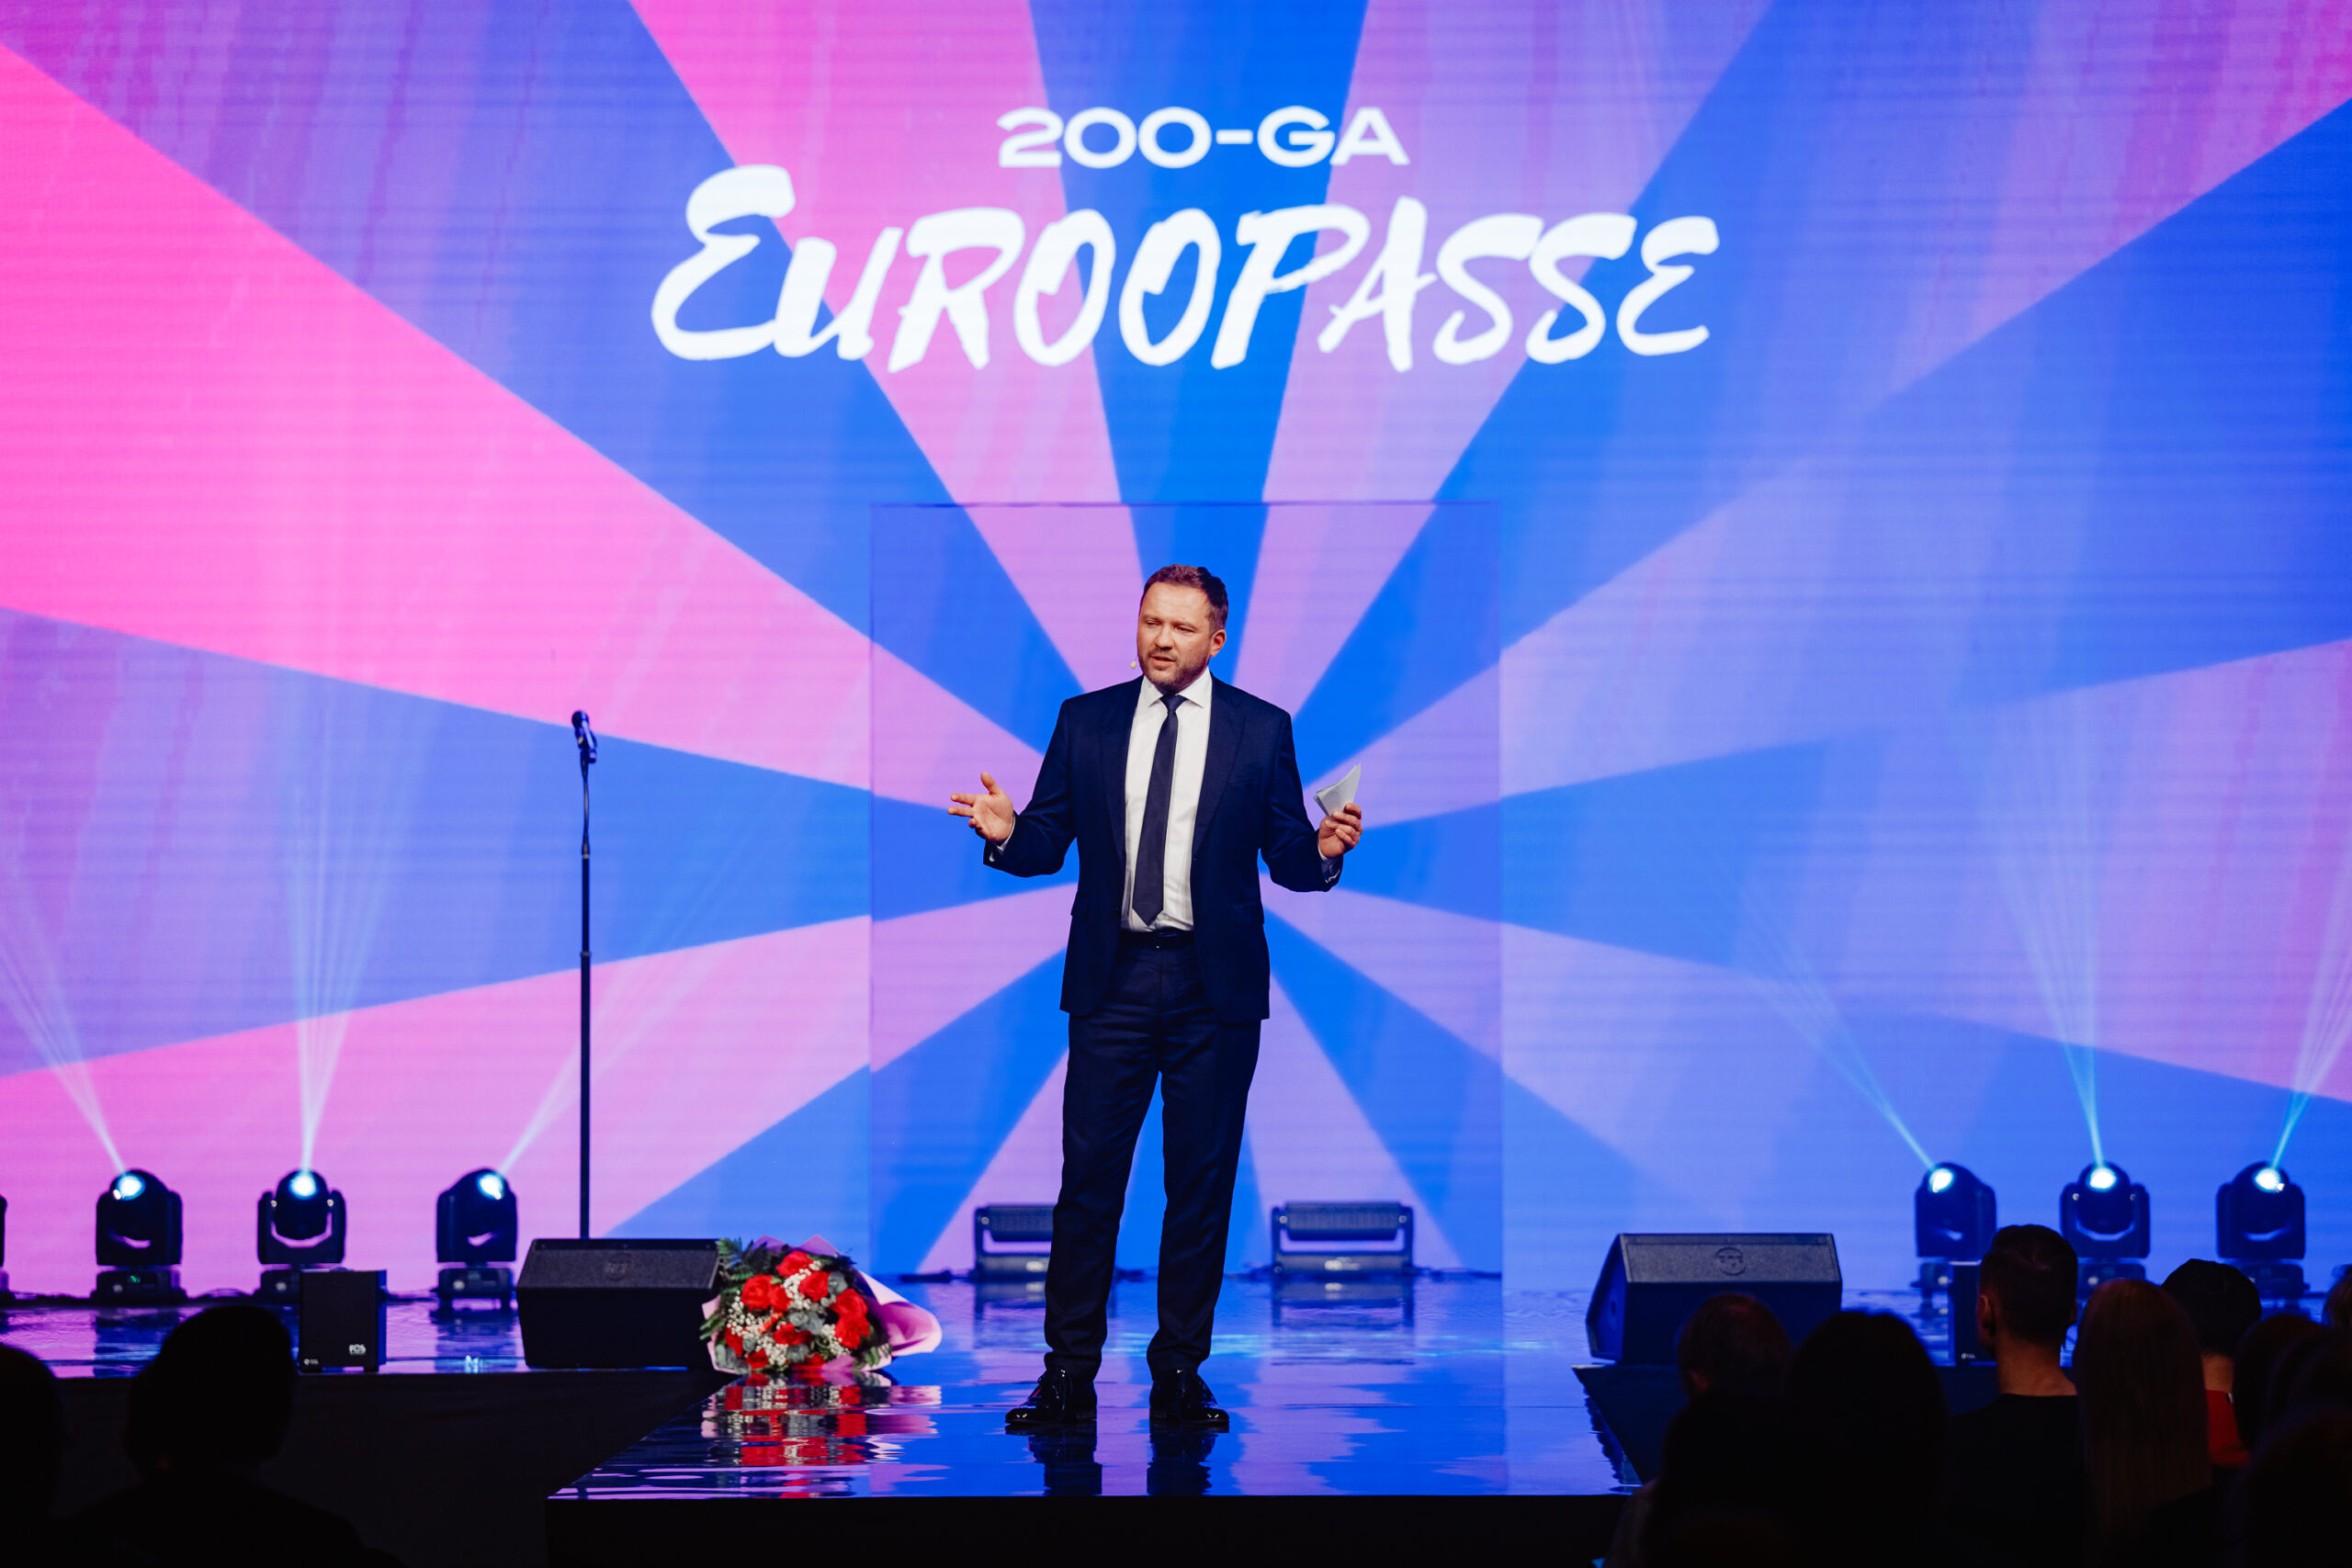 Head erakonnakaaslased, head Eesti 200 sõbrad! Täna käib Eesti 200 välja oma programmi ja nimekirja europarlamendi valimisteks. Meie programm on tulevikku vaata